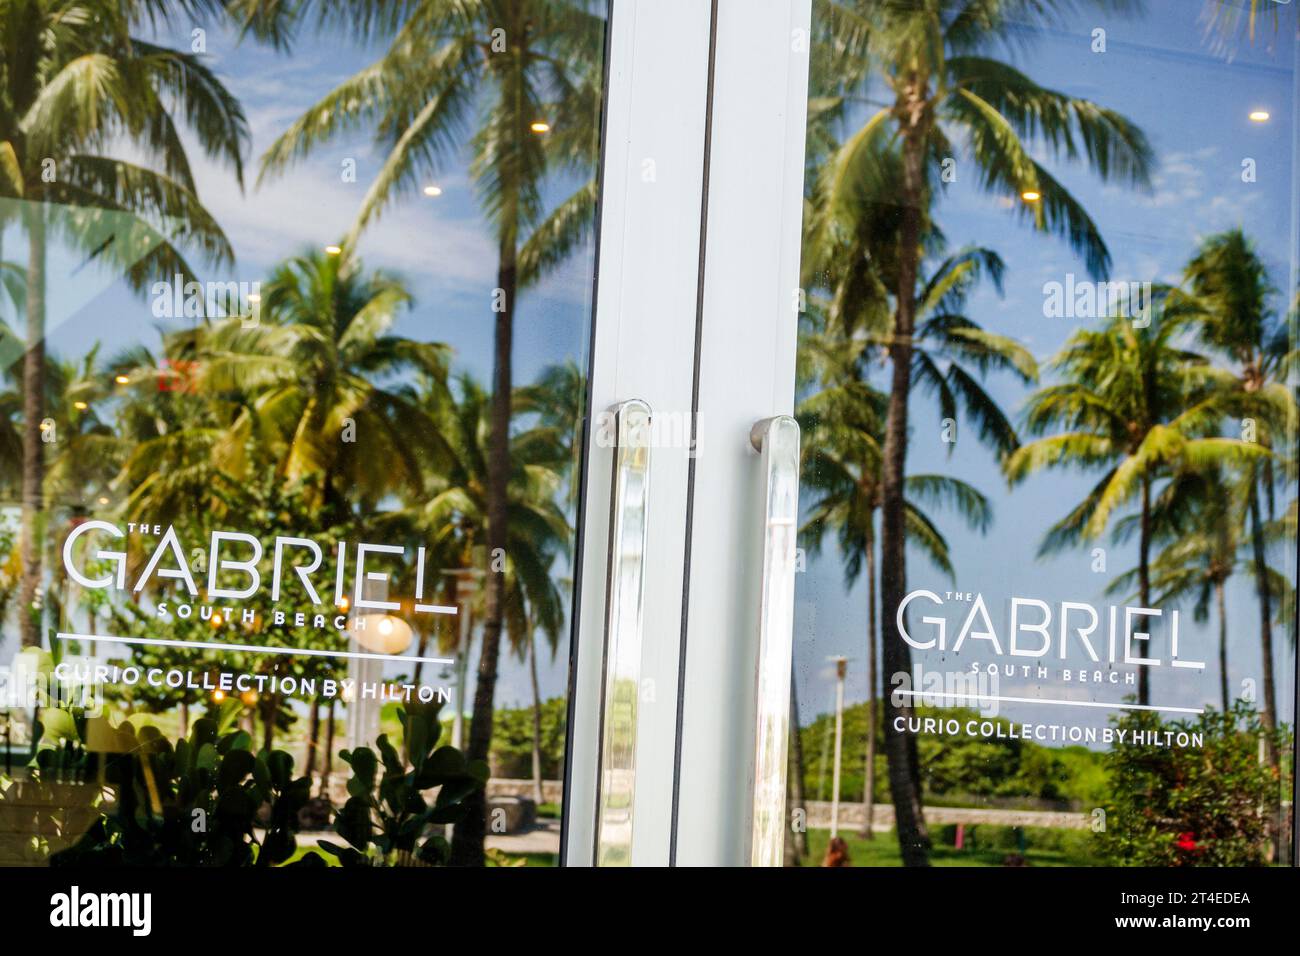 Miami Beach Florida, Außenansicht, Hotel vor dem Gebäude, Ocean Drive, das Gabriel Miami South Beach, Curio Collection by Hilton Türschild, Hotel Stockfoto